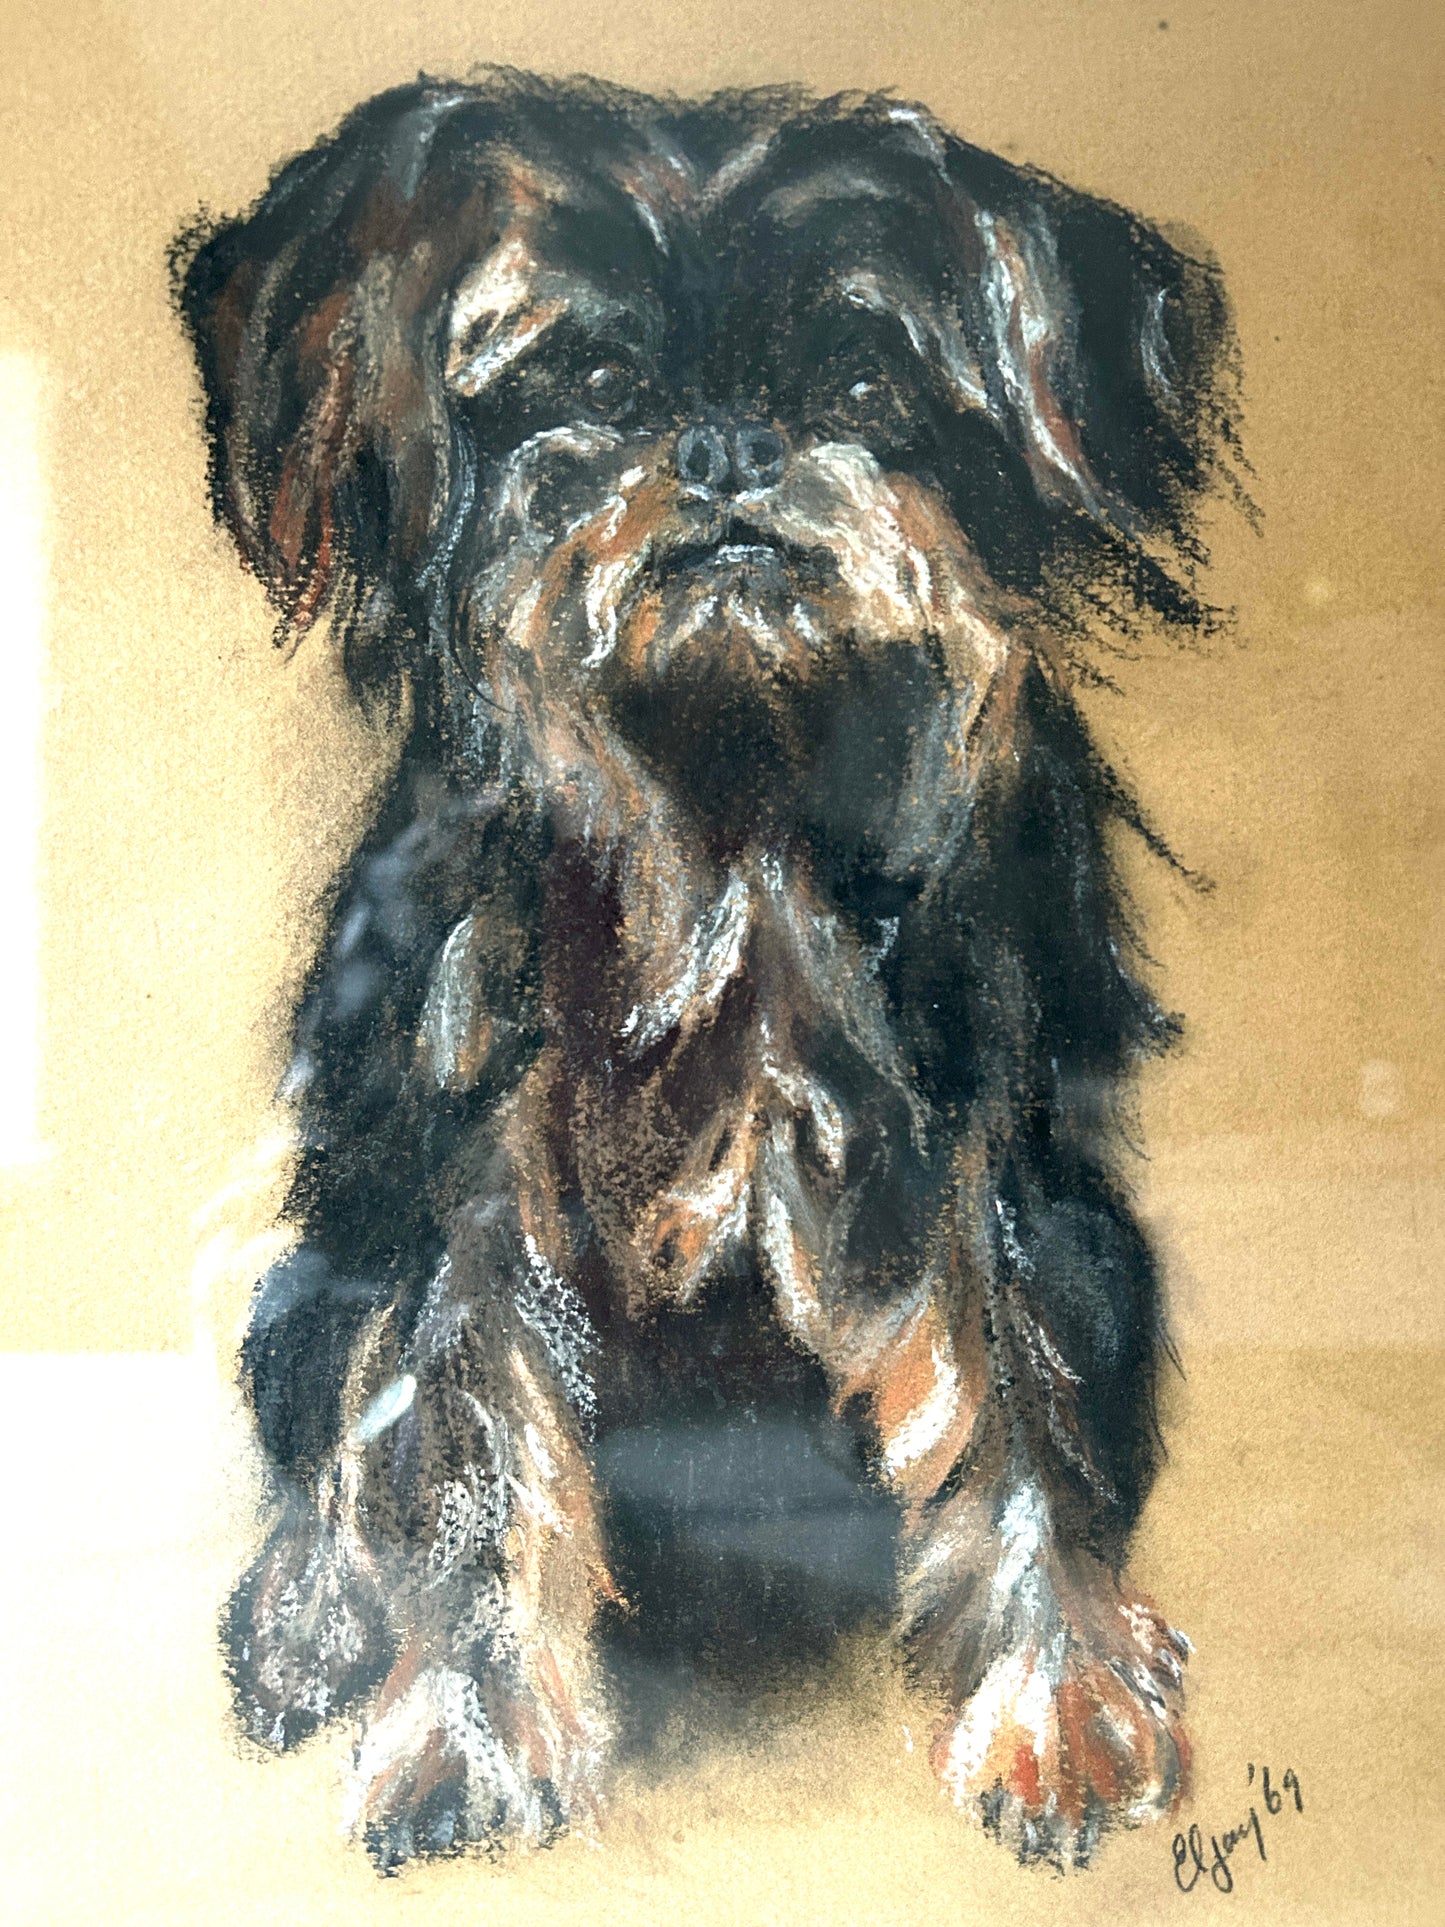 Ritratto di metà secolo di uno Yorkshire Terrier